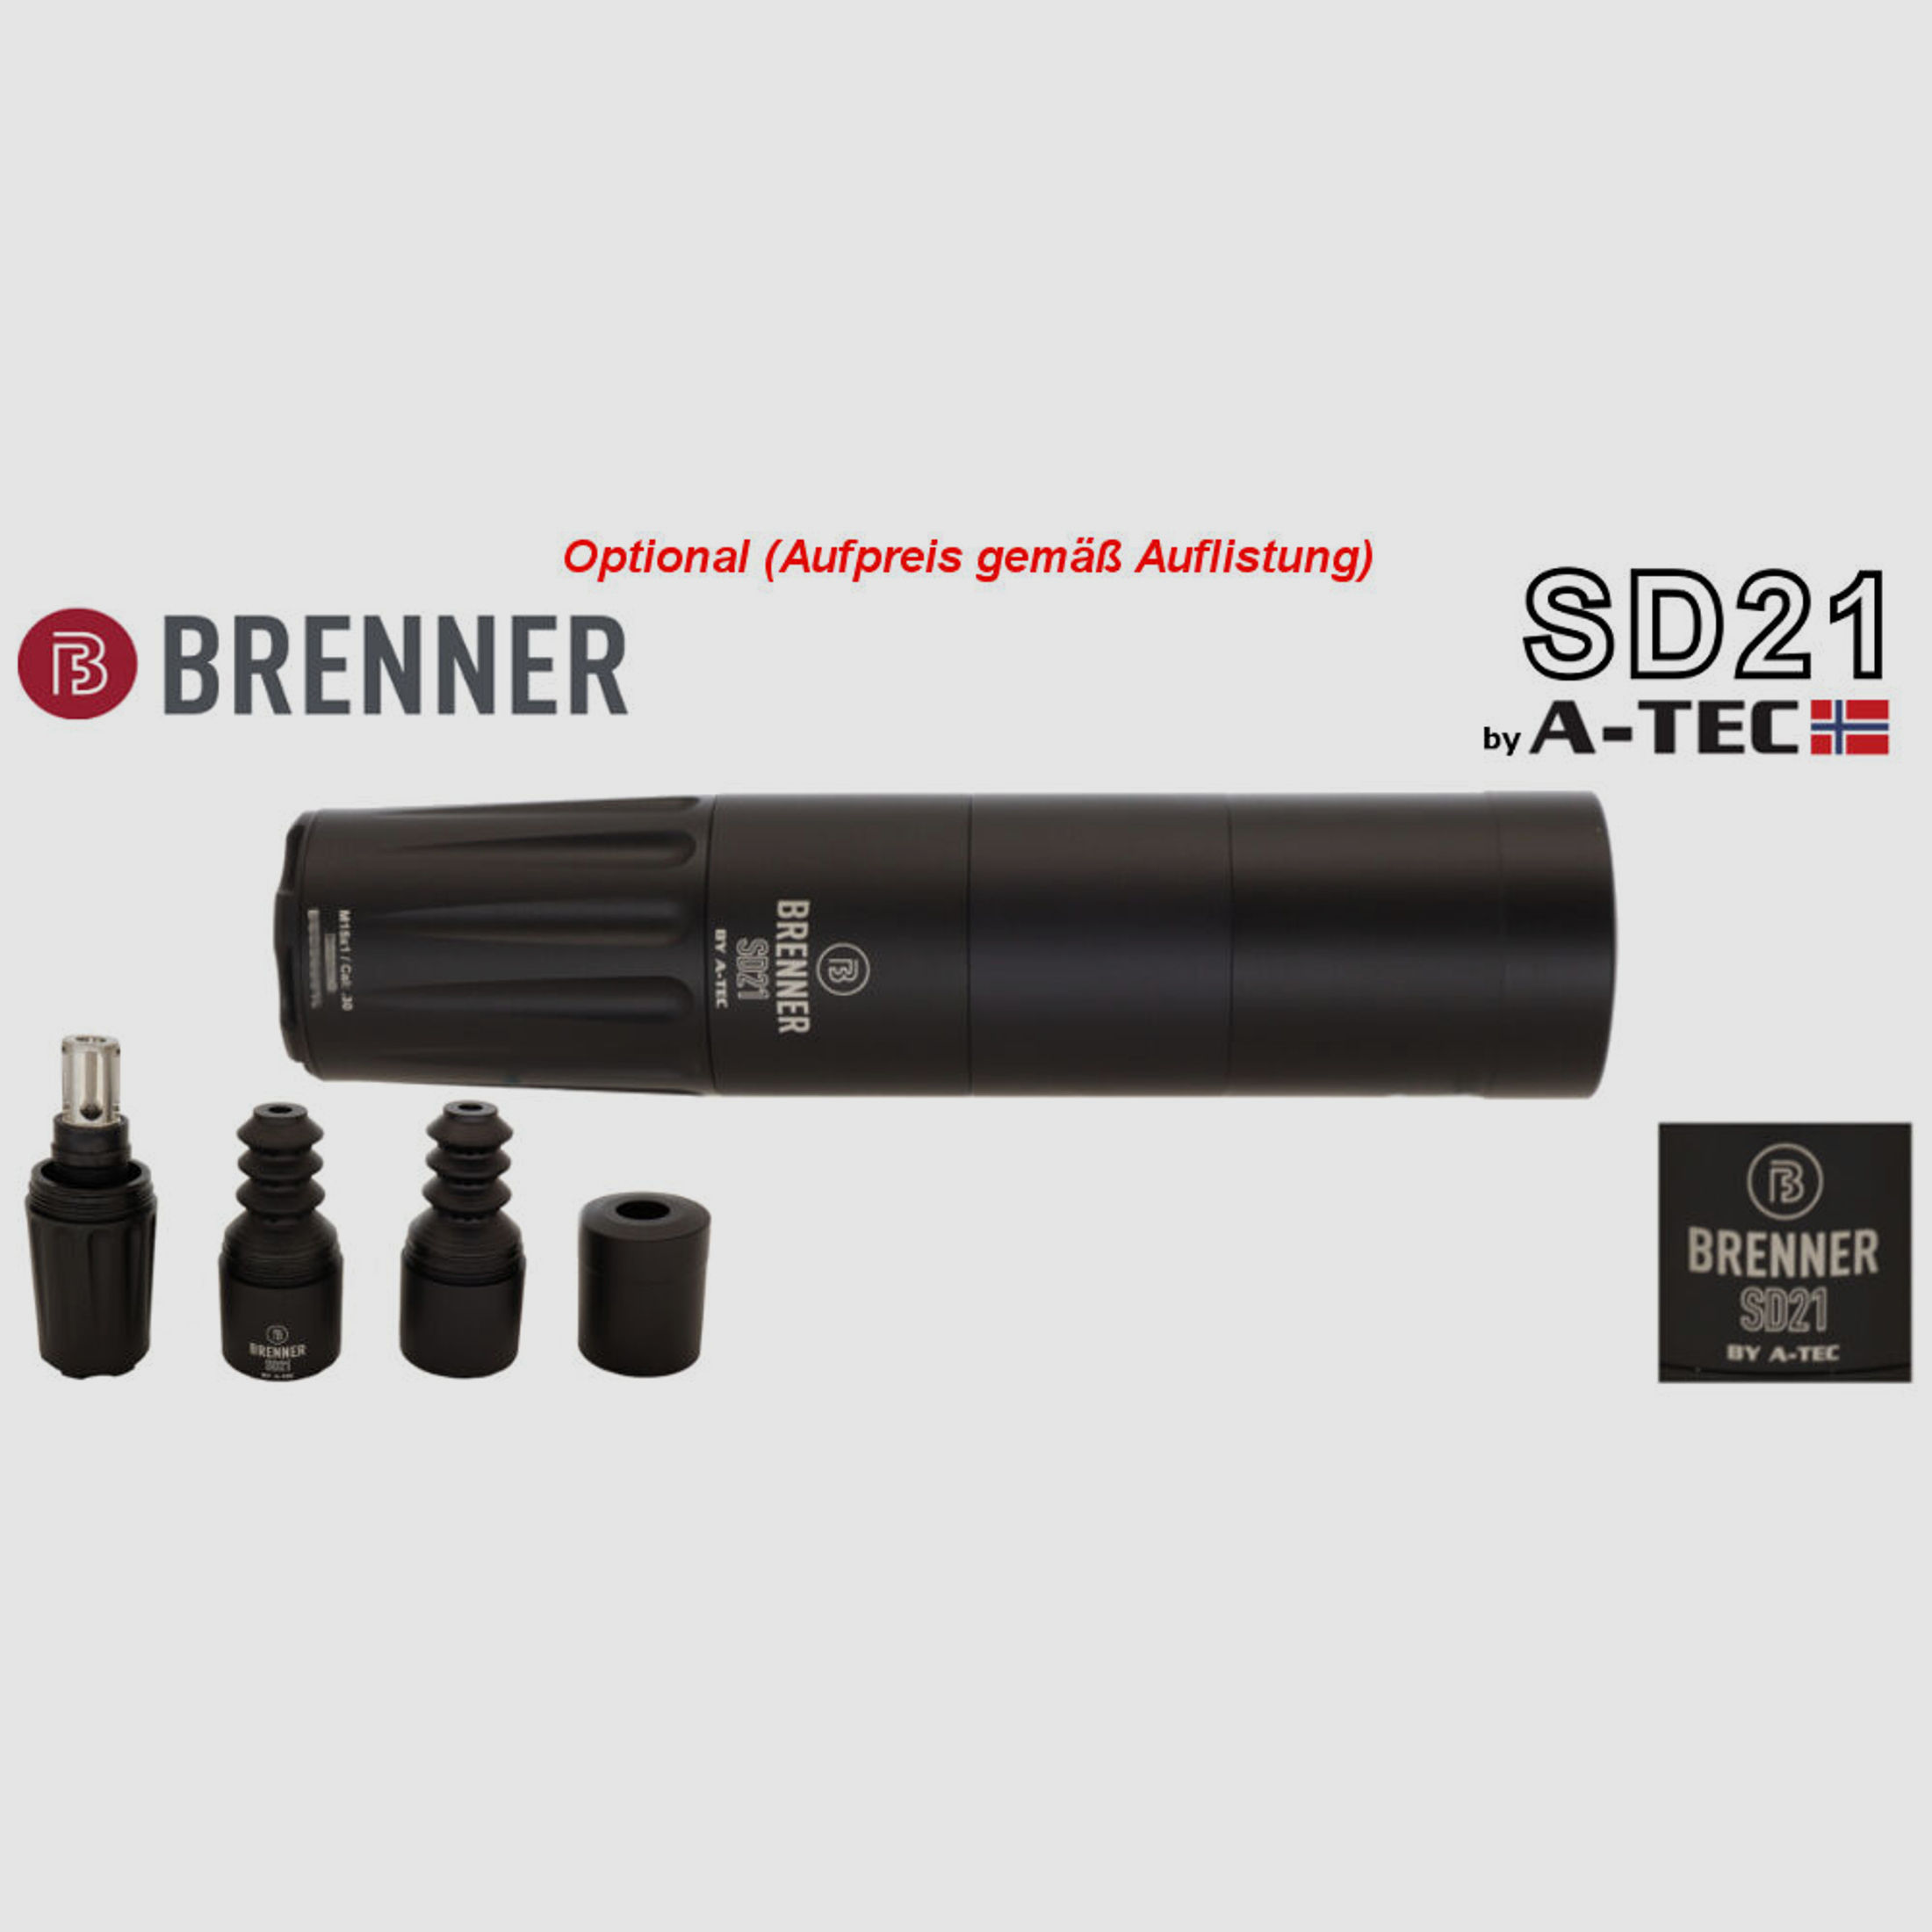 Bergara	 B14 B&H Prohunter Flex LINKS Lochschaft Bushnell 2,5-15x50 fertig montiert / Optional: Brenner Schalldämpfer